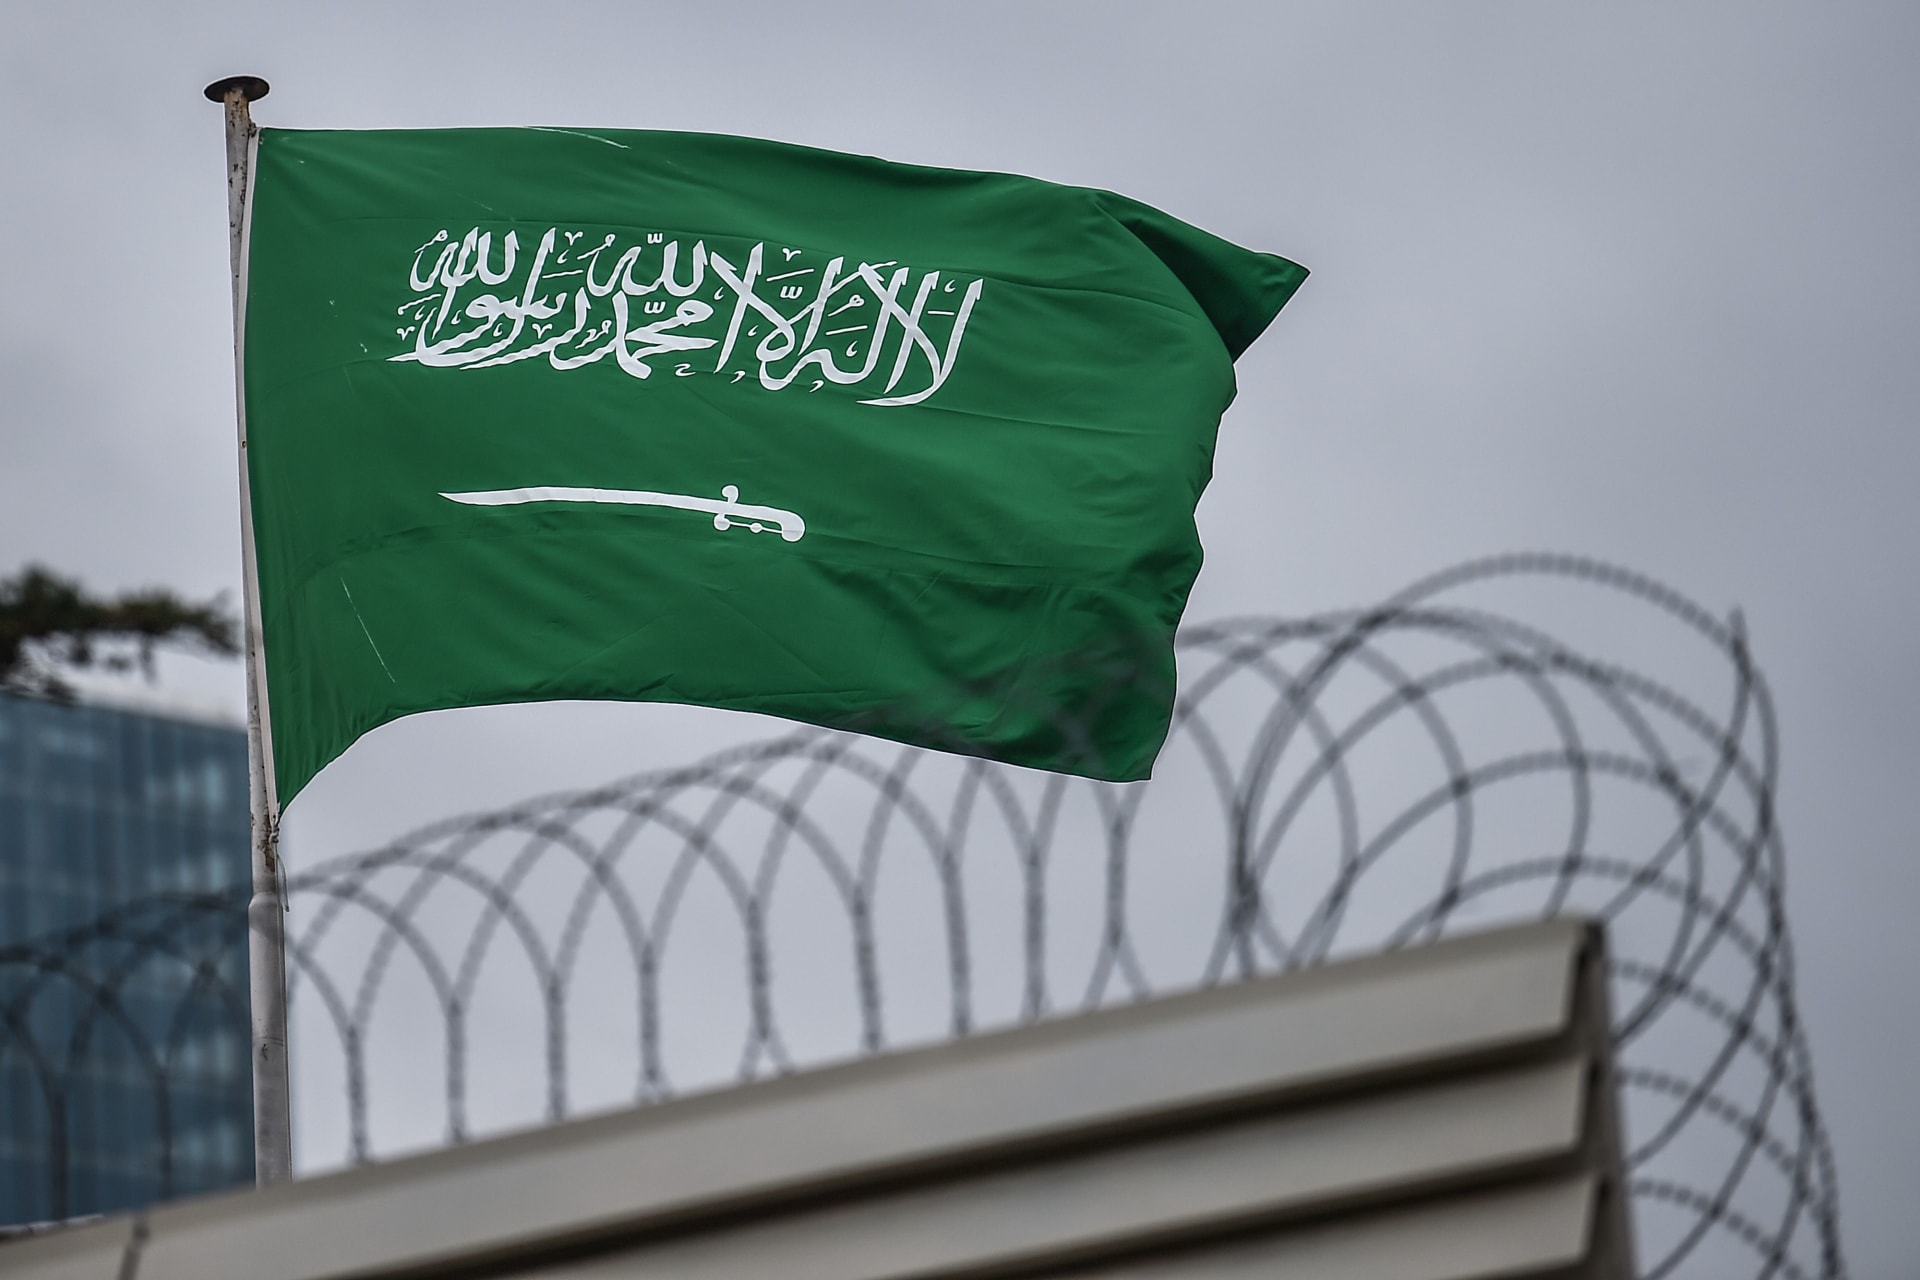 السعودية تجري تعديلا على لائحة "مكافحة الإرهاب" يسمح للنيابة بالإفراج مؤقتا عن الموقوفين